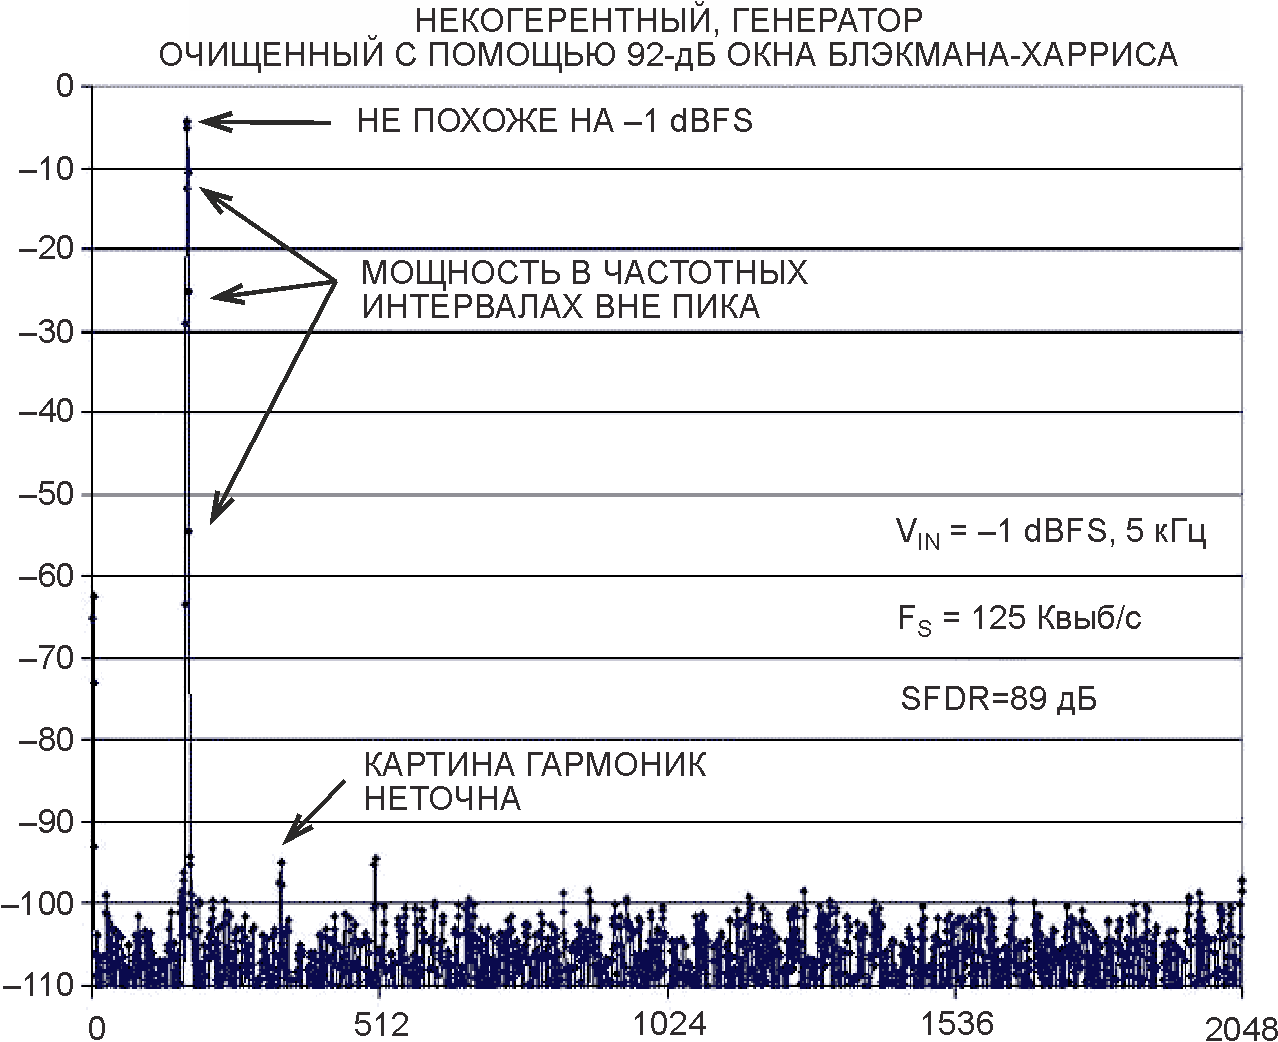 Это 4096-точечное БПФ было получено с помощью несинхронизированного генератора с 92-дБ окном Блэкмана-Харриса. Обратите внимание, что уровень пика не похож на -1 дБFS, и что в частотных интервалах вокруг пика есть мощность.